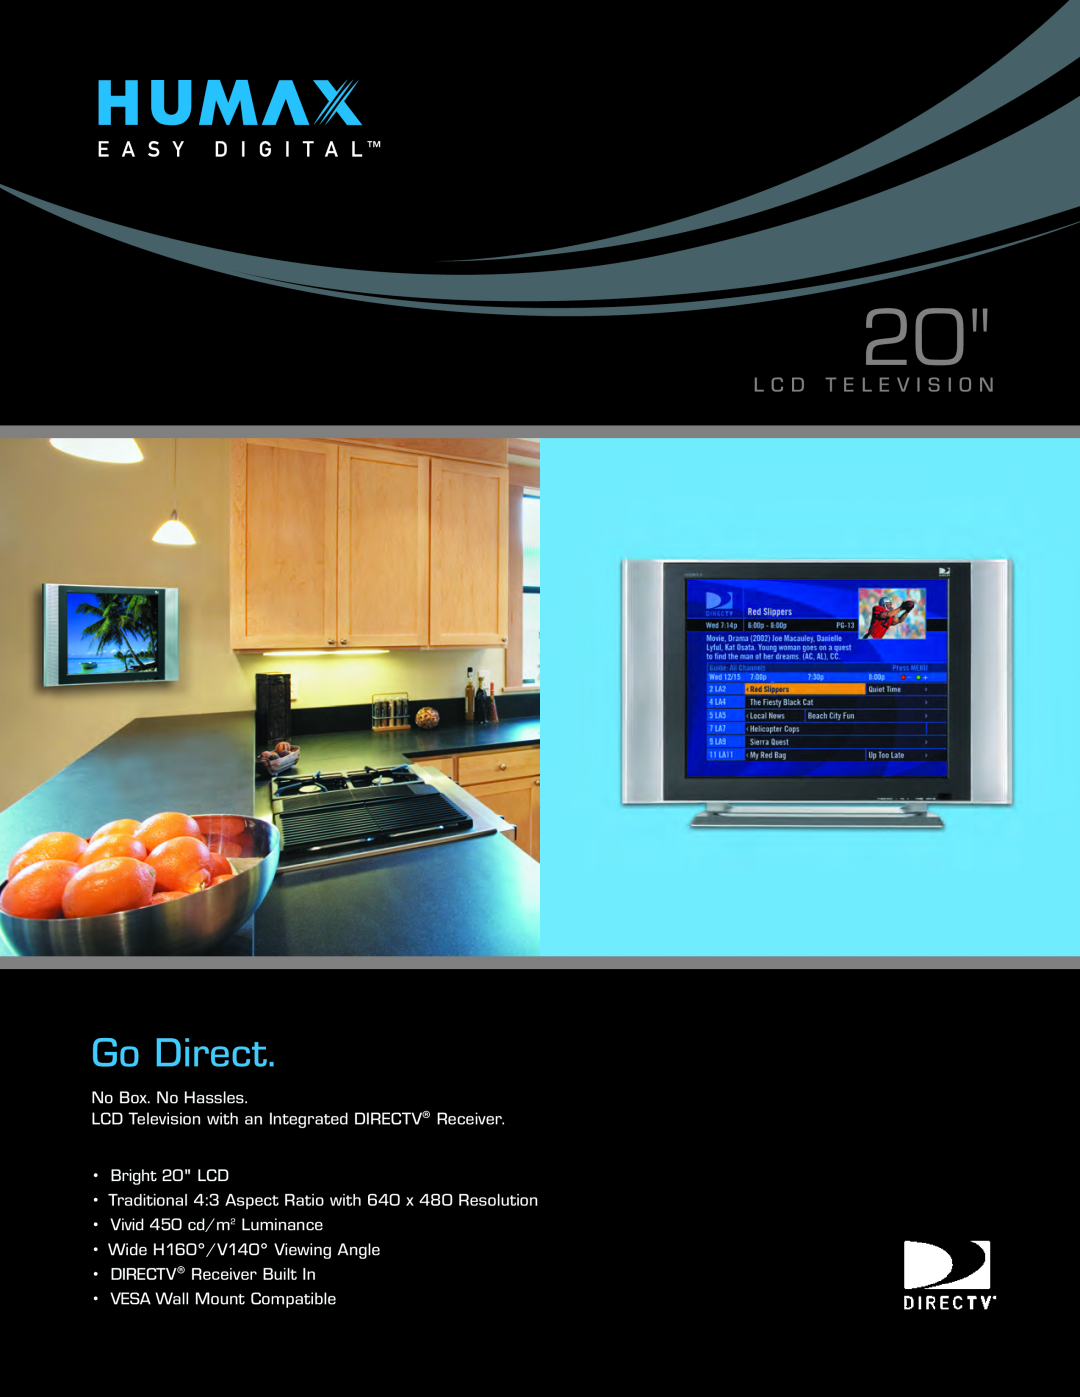 Humax LD-2060 manual Go Direct, L C D T E L E V I S I O N, Vivid 450 cd/m2 Luminance Wide H160/V140 Viewing Angle 